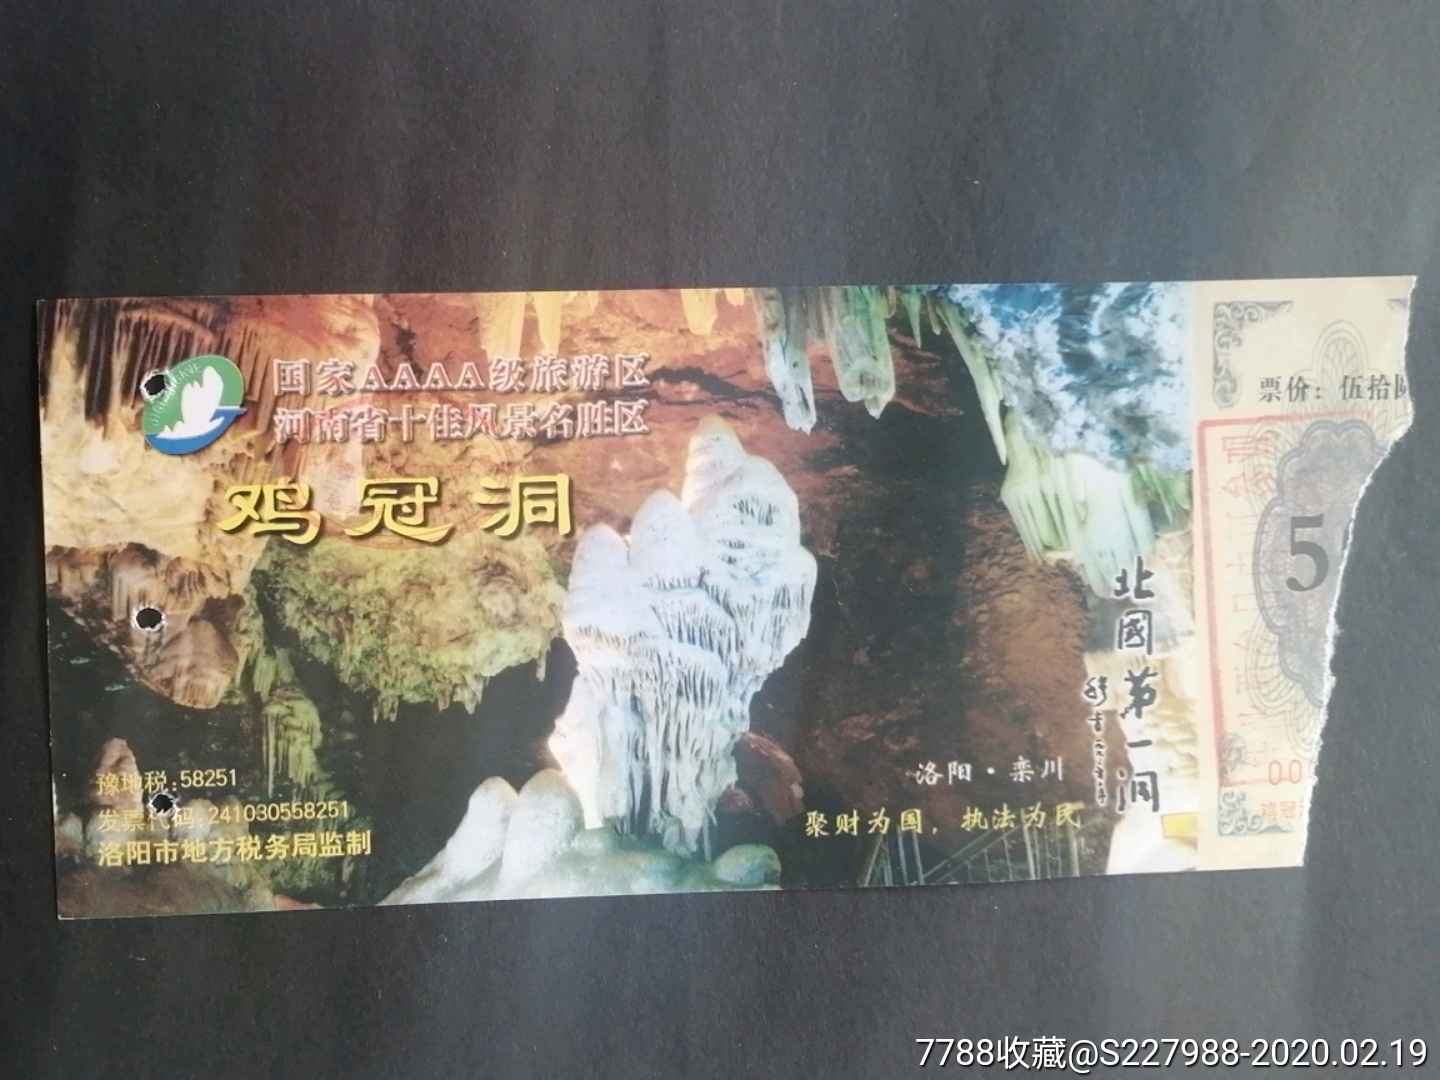 鸡冠山-价格:1.0000元-se71163362-旅游景点门票-零售